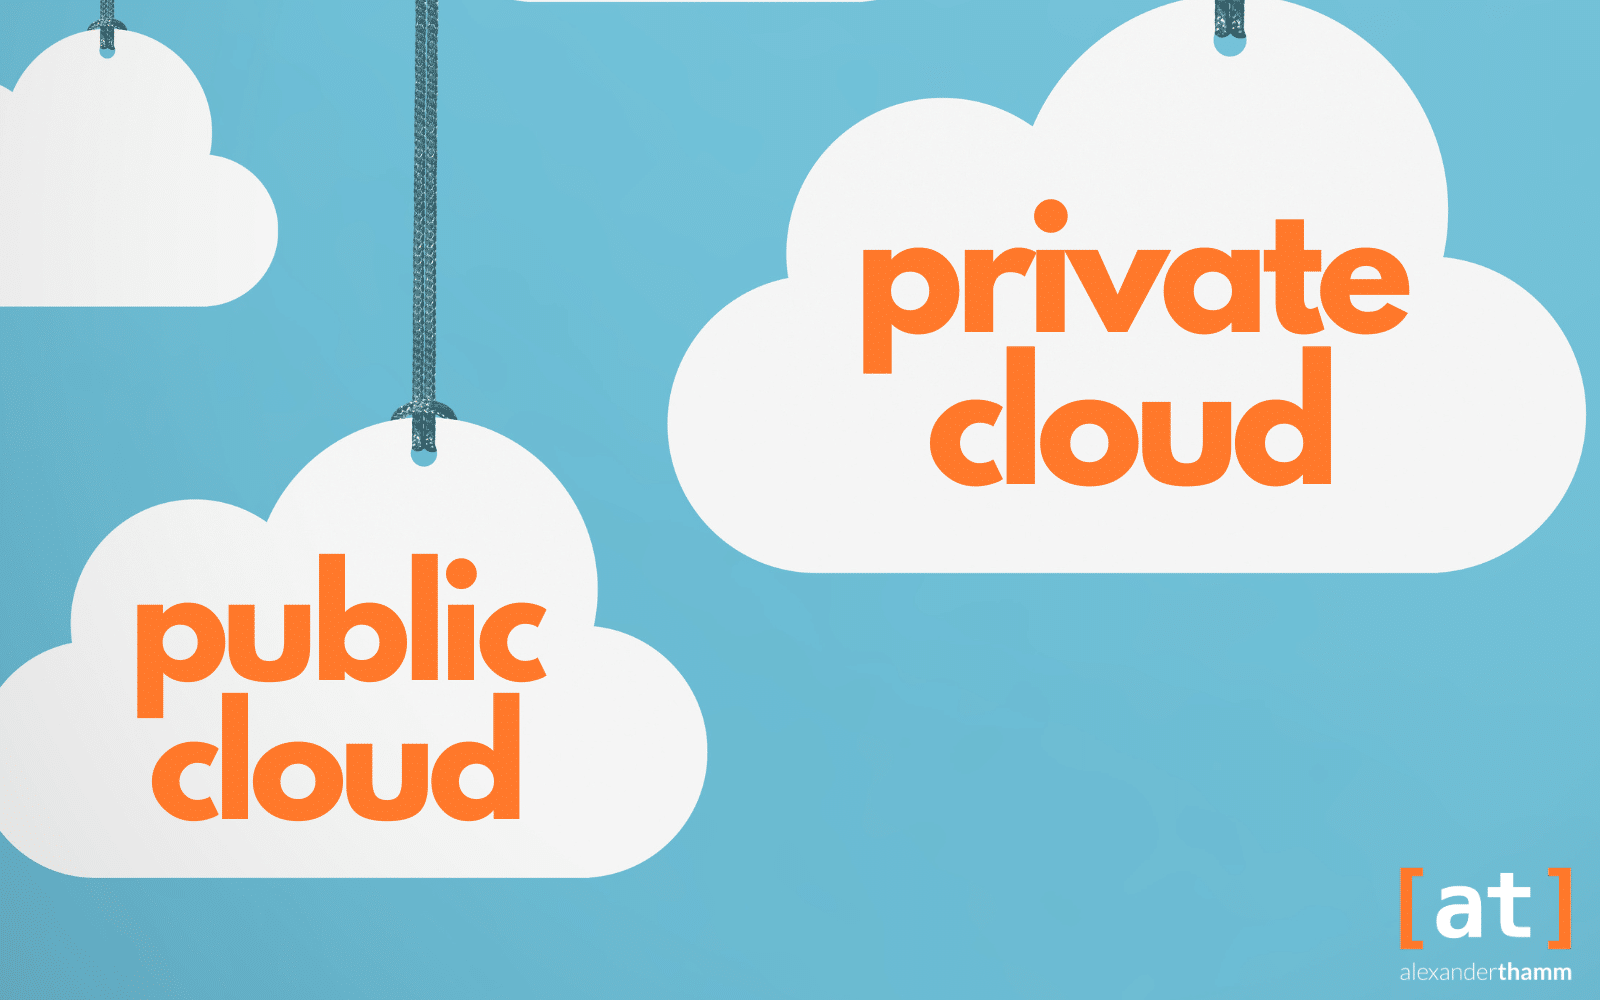 Nube pública frente a nube privada: ventajas, desventajas, diferencias y casos de uso para las empresas